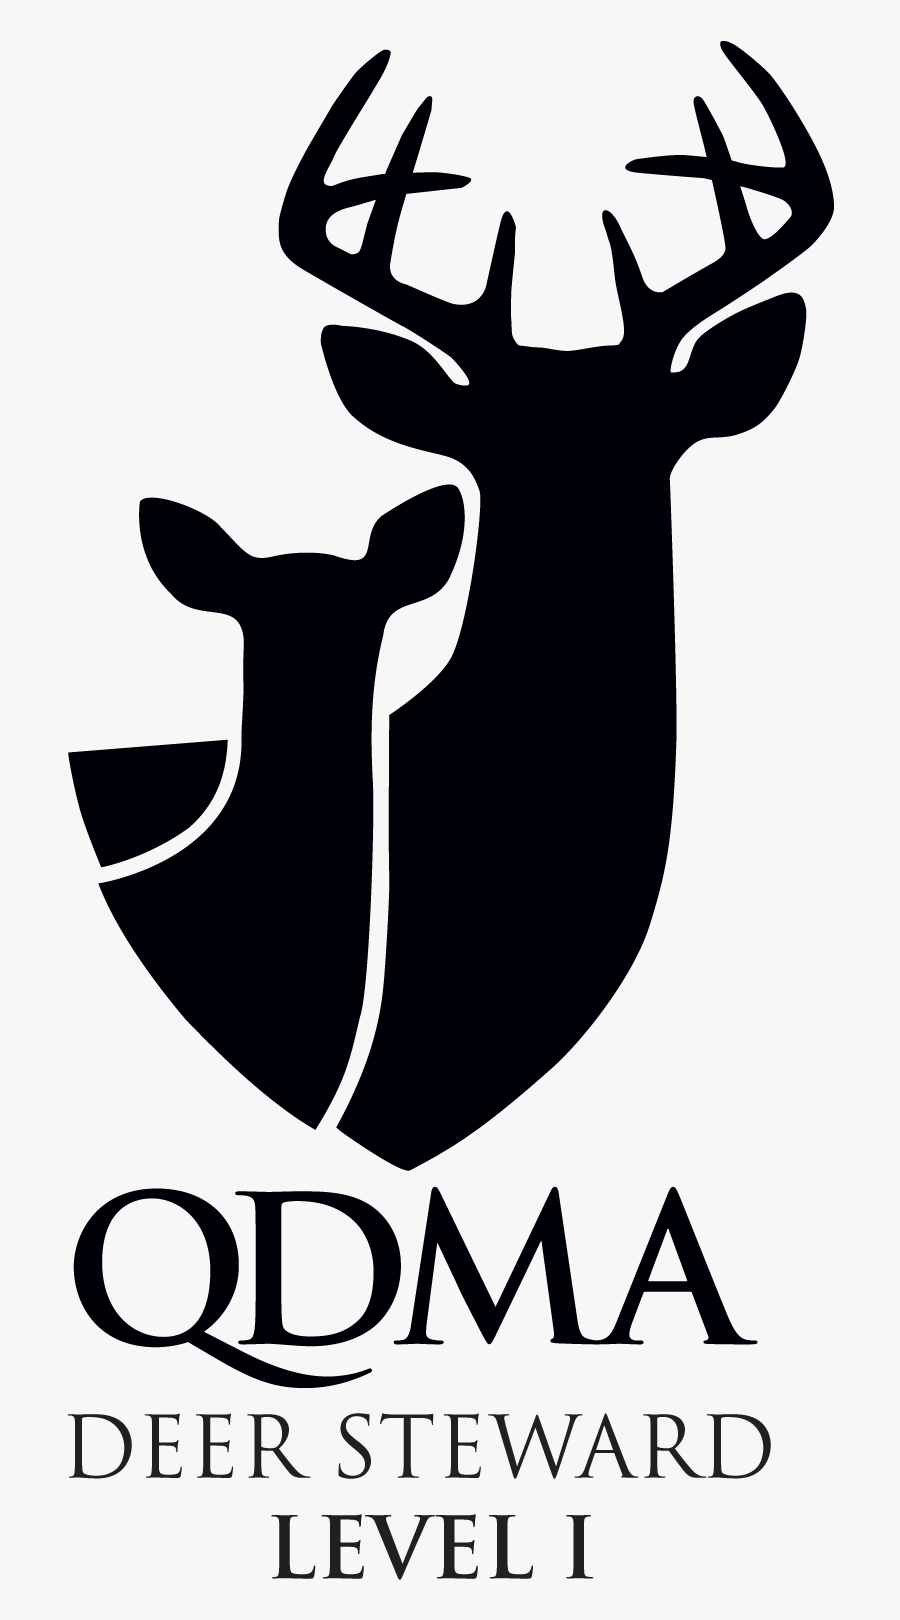 Qdma Deer Steward Level - Qdma Deer Steward Level 1, Transparent Clipart